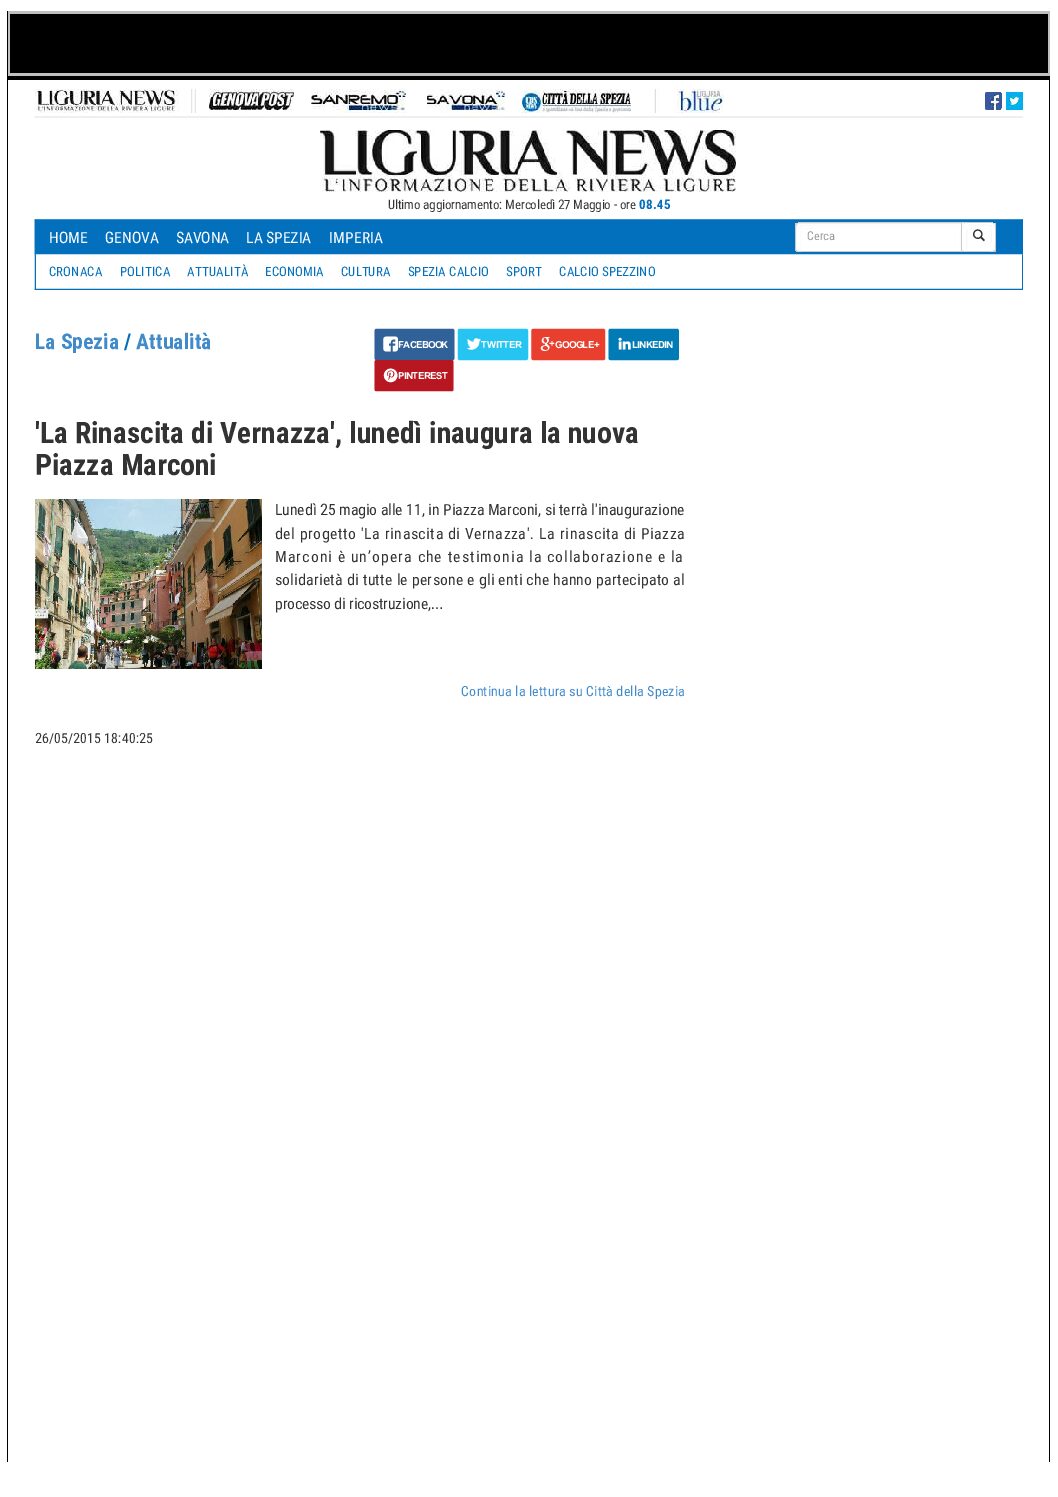 ‘La Rinascita di Vernazza’, lunedì inaugura la nuova Piazza Marconi